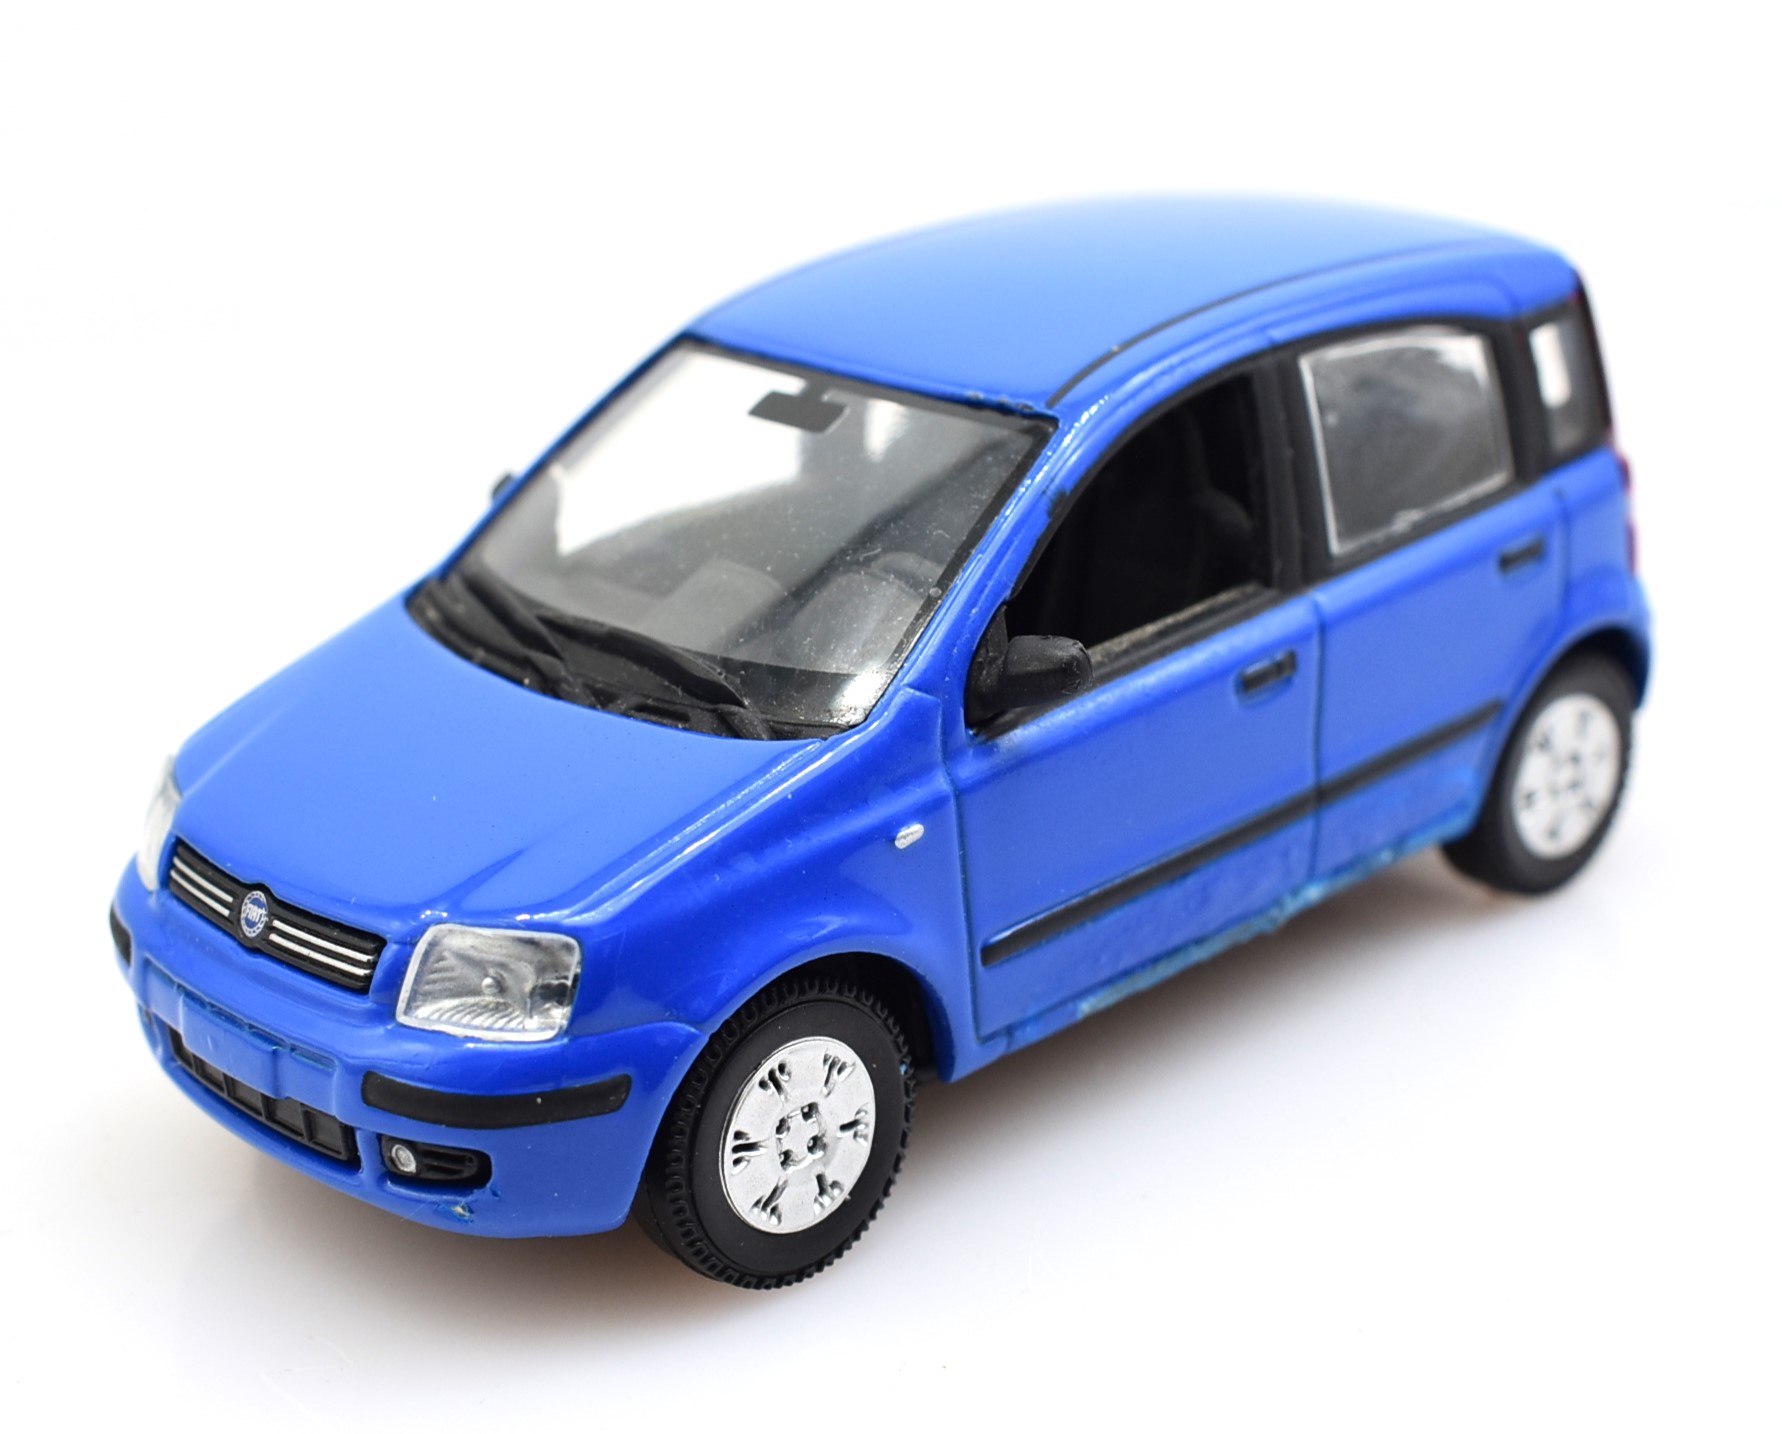 Modellino auto scala 1:43 Fiat Panda blu Norev diecast modellismo da collezione